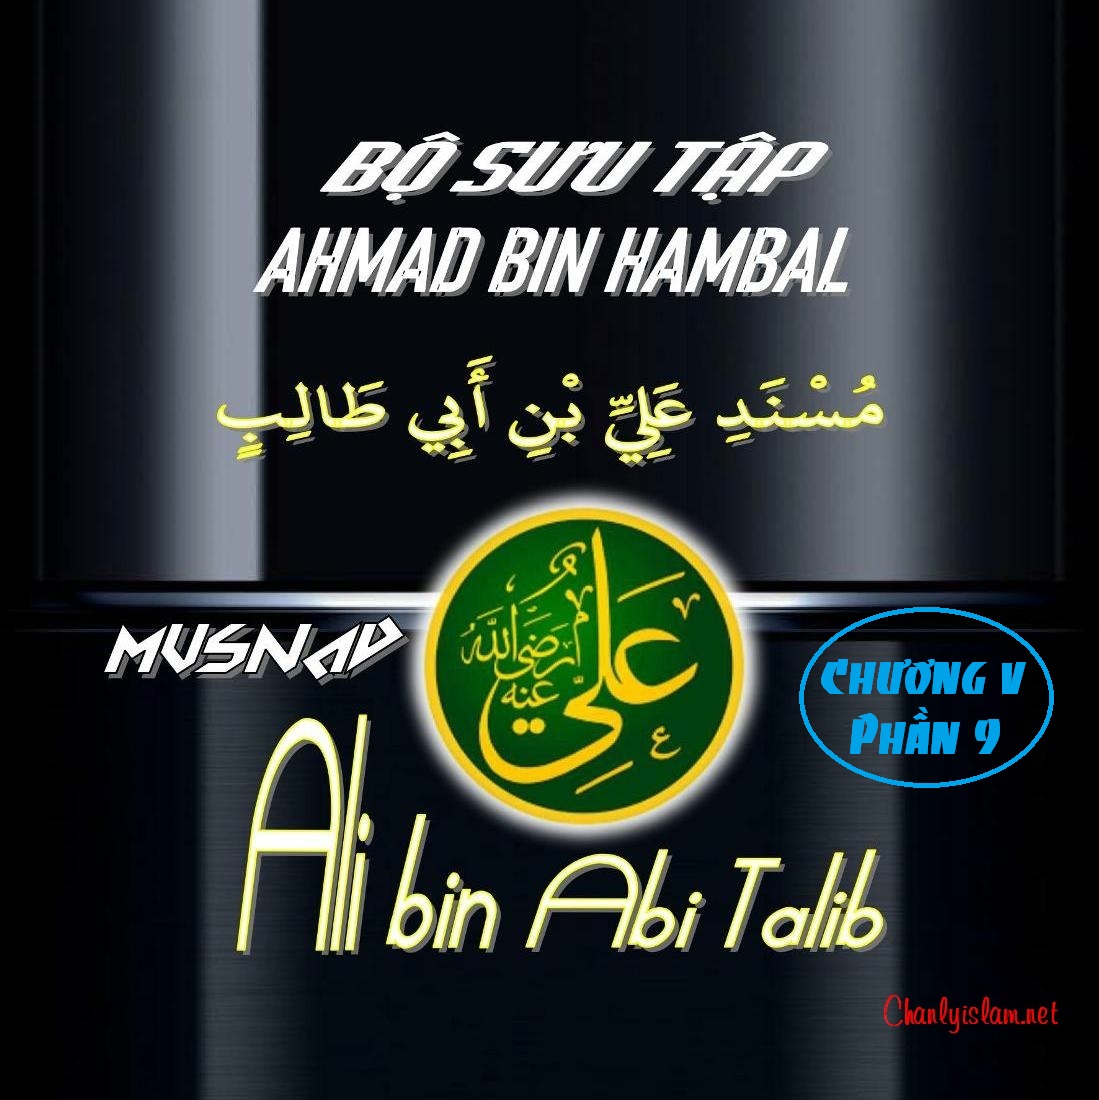 BỘ SƯU TẬP MUSNAD IMAM AHMAD IBN HANBAL - CHƯƠNG V - MUSNAD ALI BIN ABI TALIB - PHẦN 9